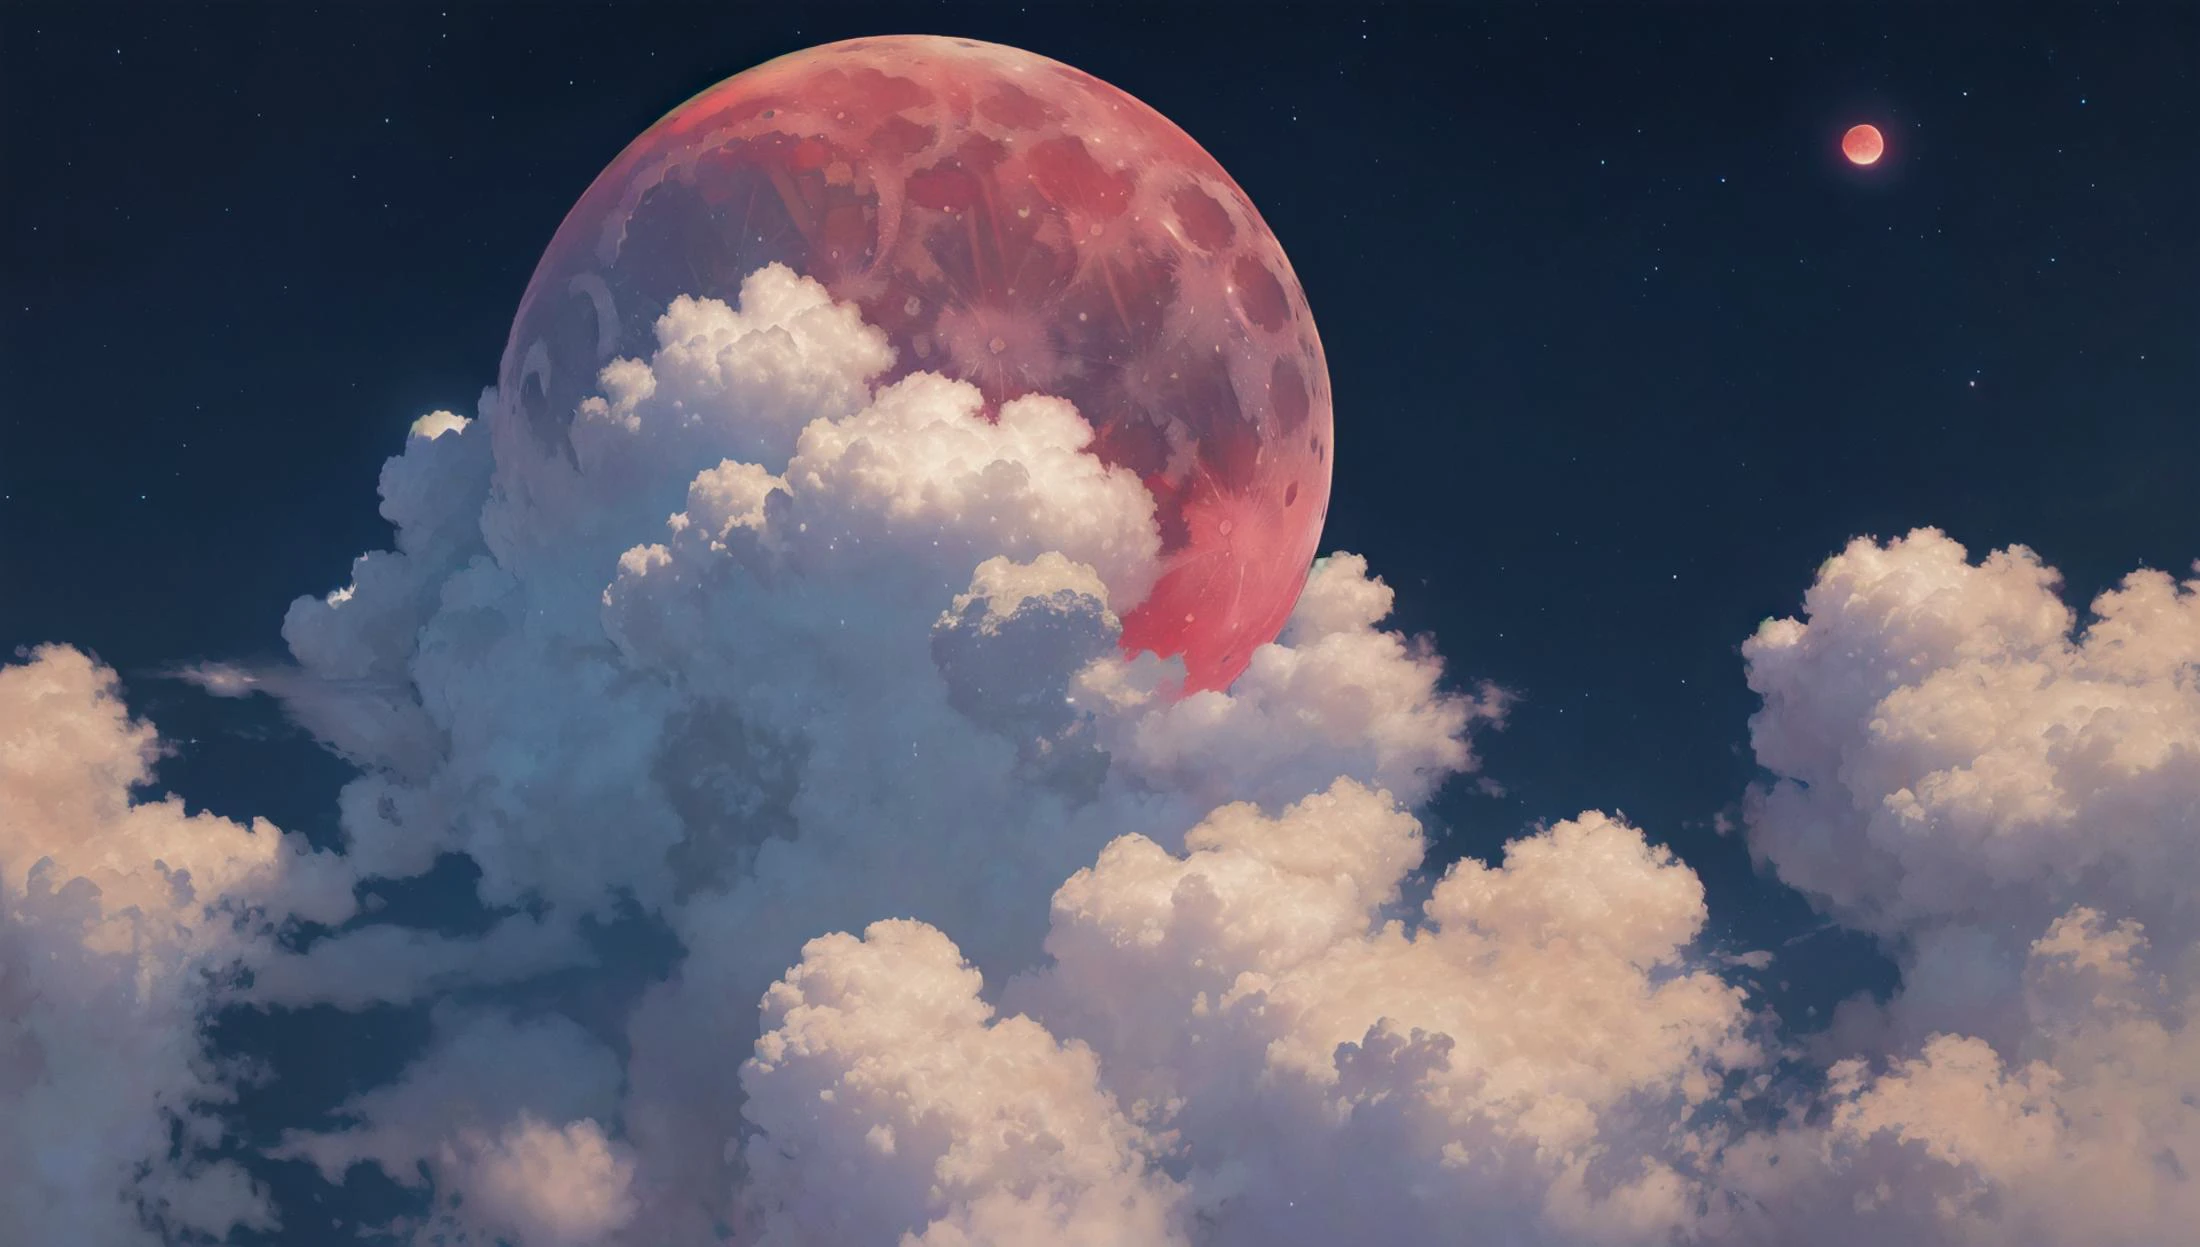 ((шедевр:1.4,Лучшее качество)), ультра детализация,  облако, на открытом воздухе,
красный, обильный, 8К, высокая детализация, обои, ночь, Луна, звезды волшебная башня,
 